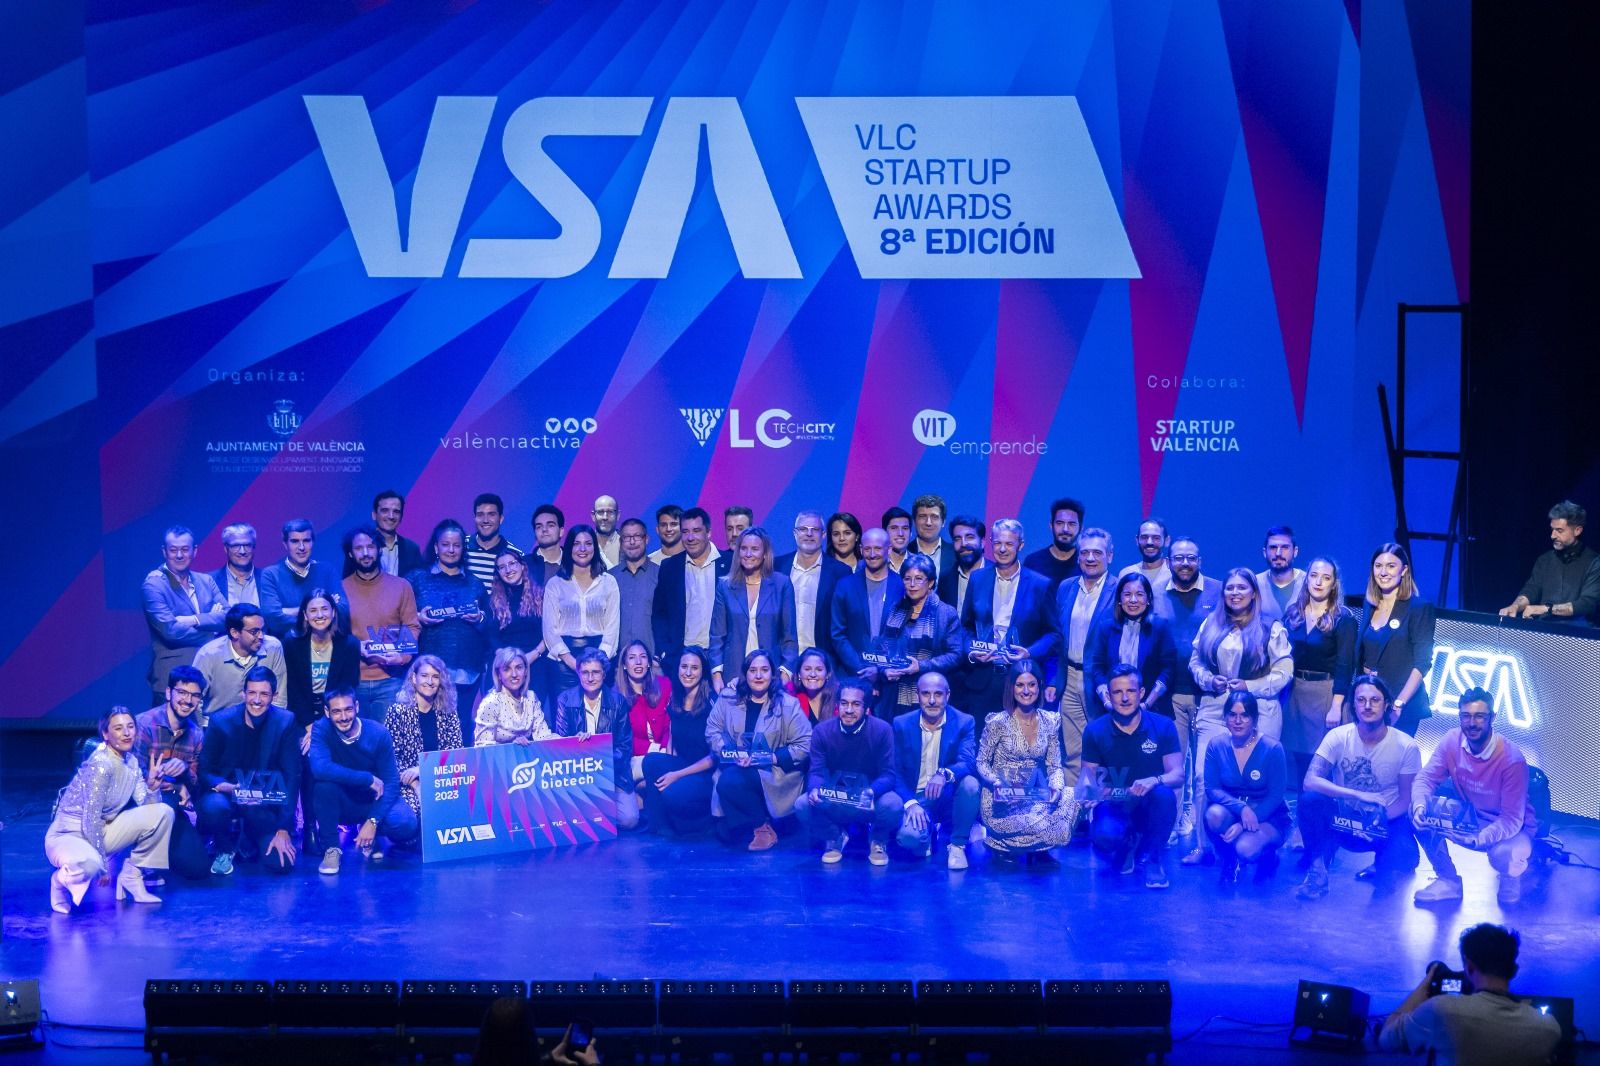 La VIII edición de los VLC Startup Awards premia el talento tecnológico e innovador local